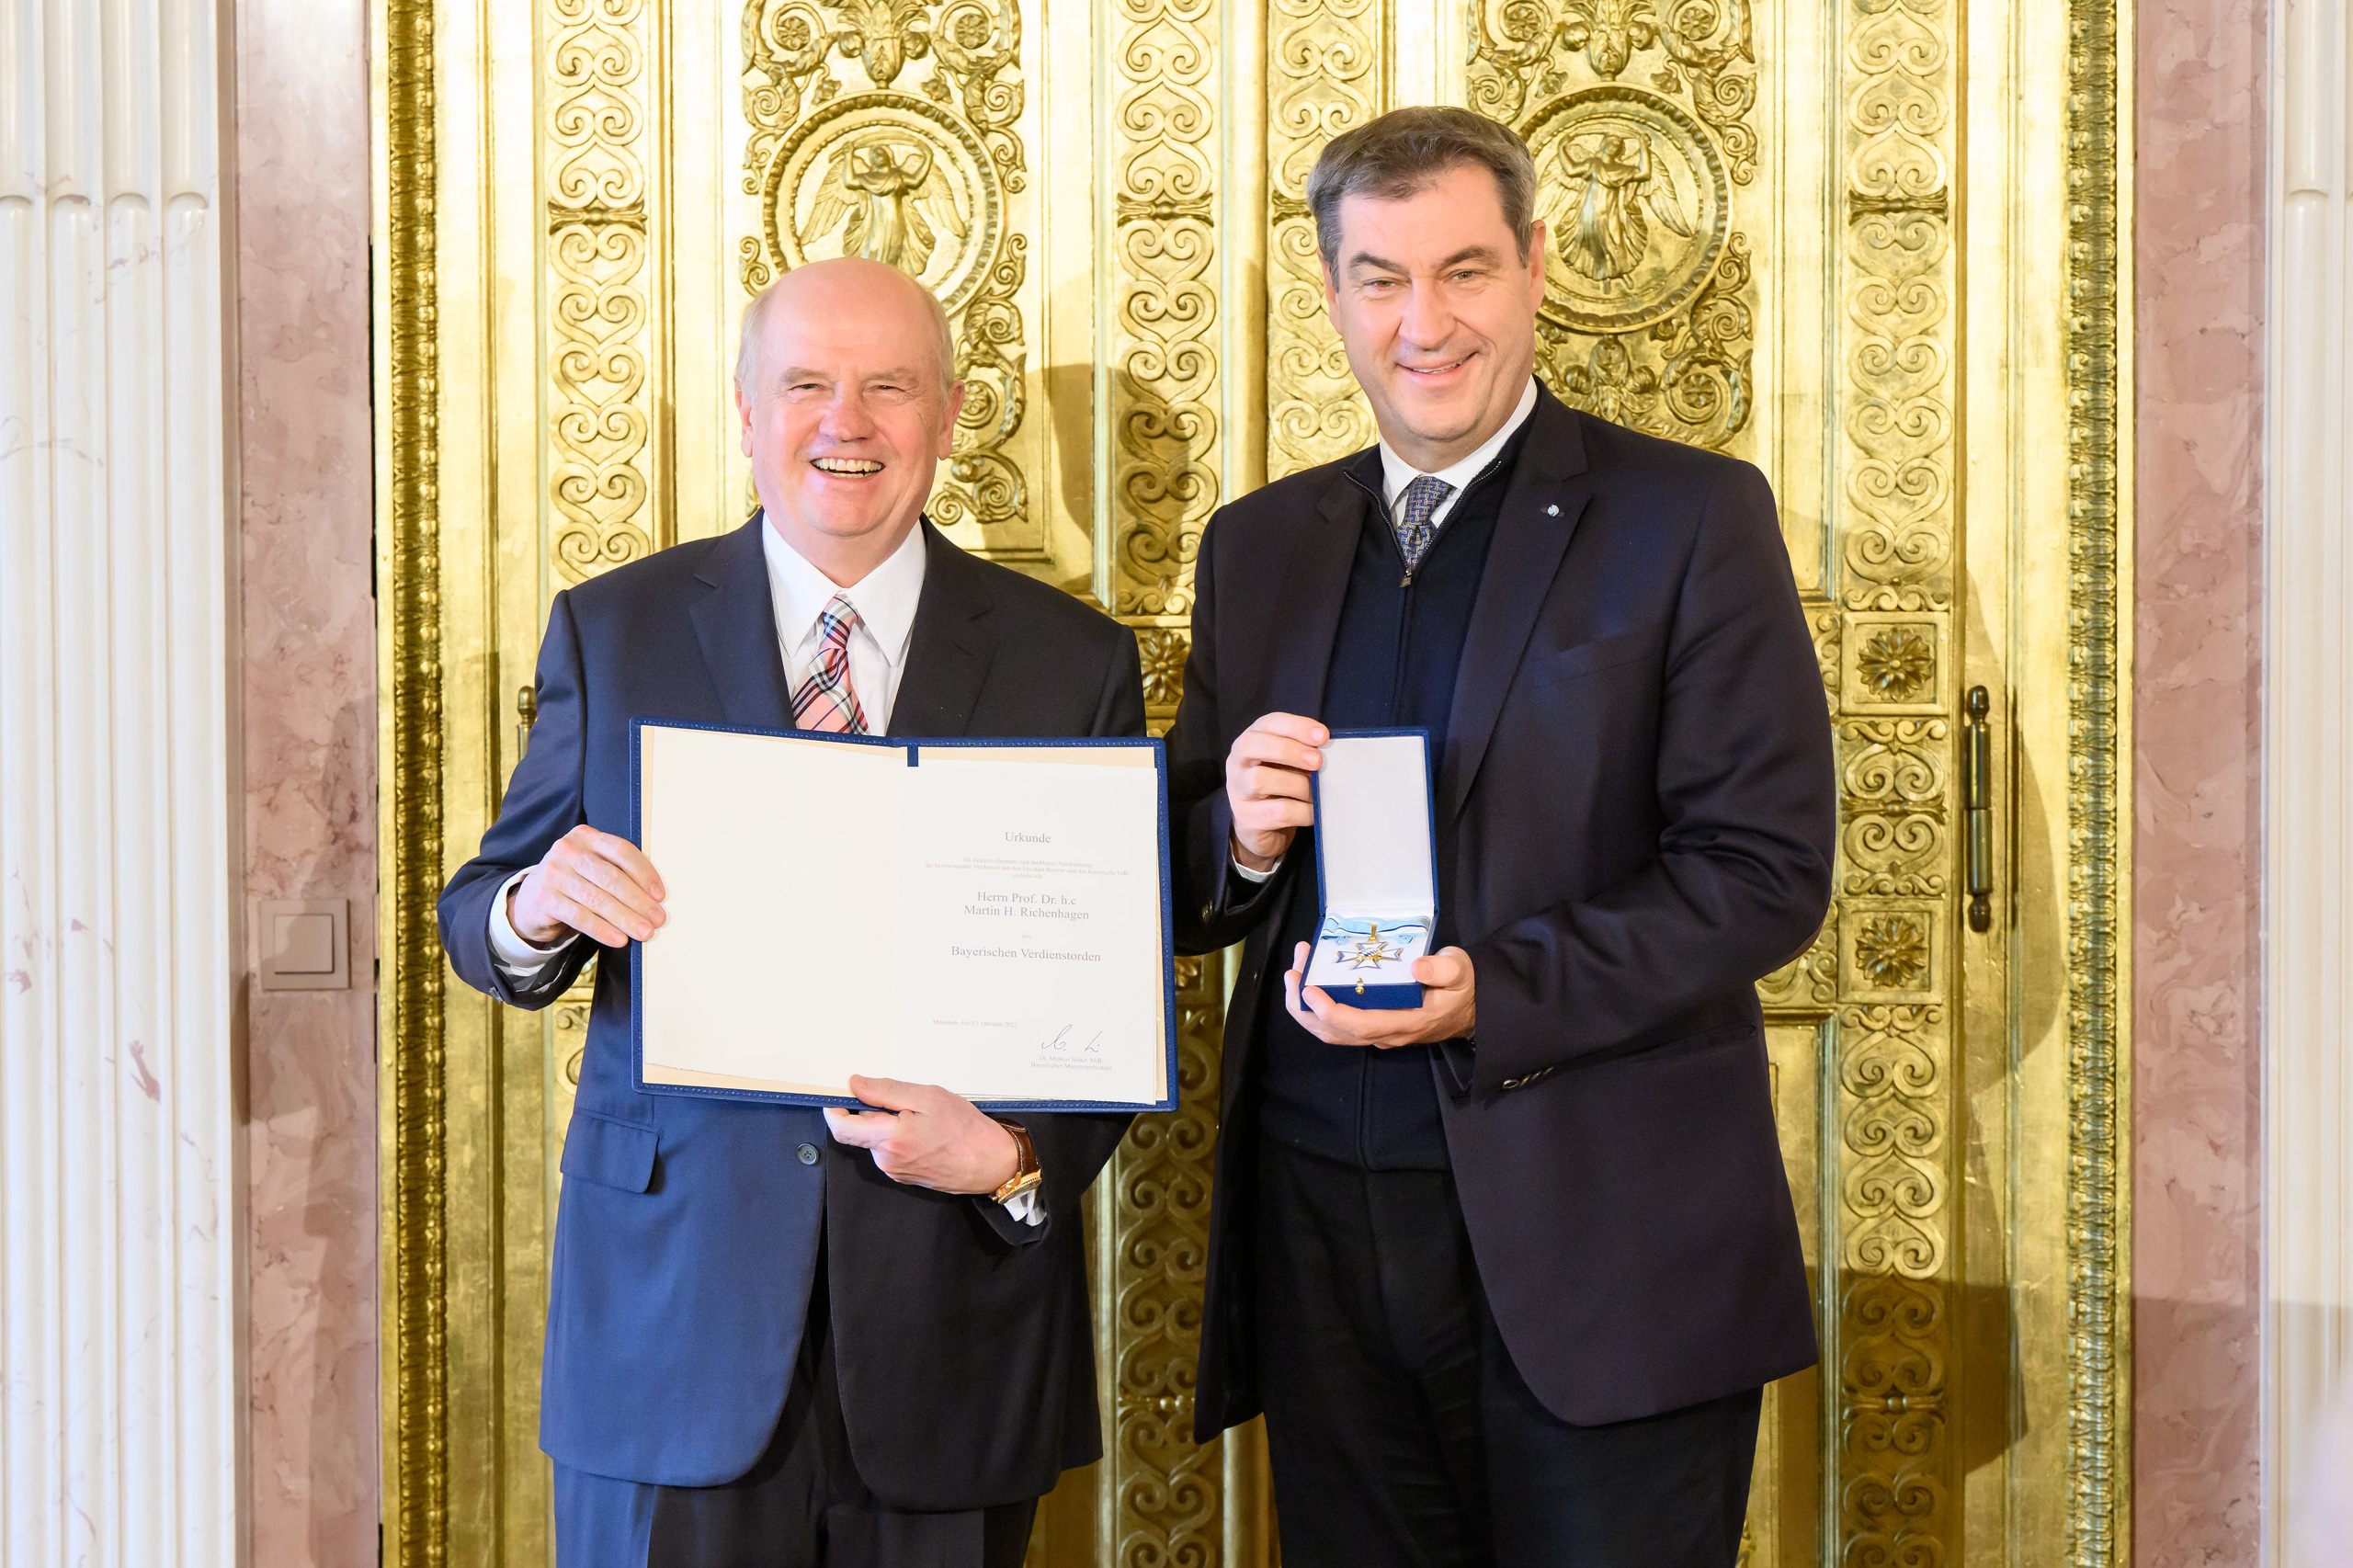 Martin Richenhagen receives Bavarian Order of Merit